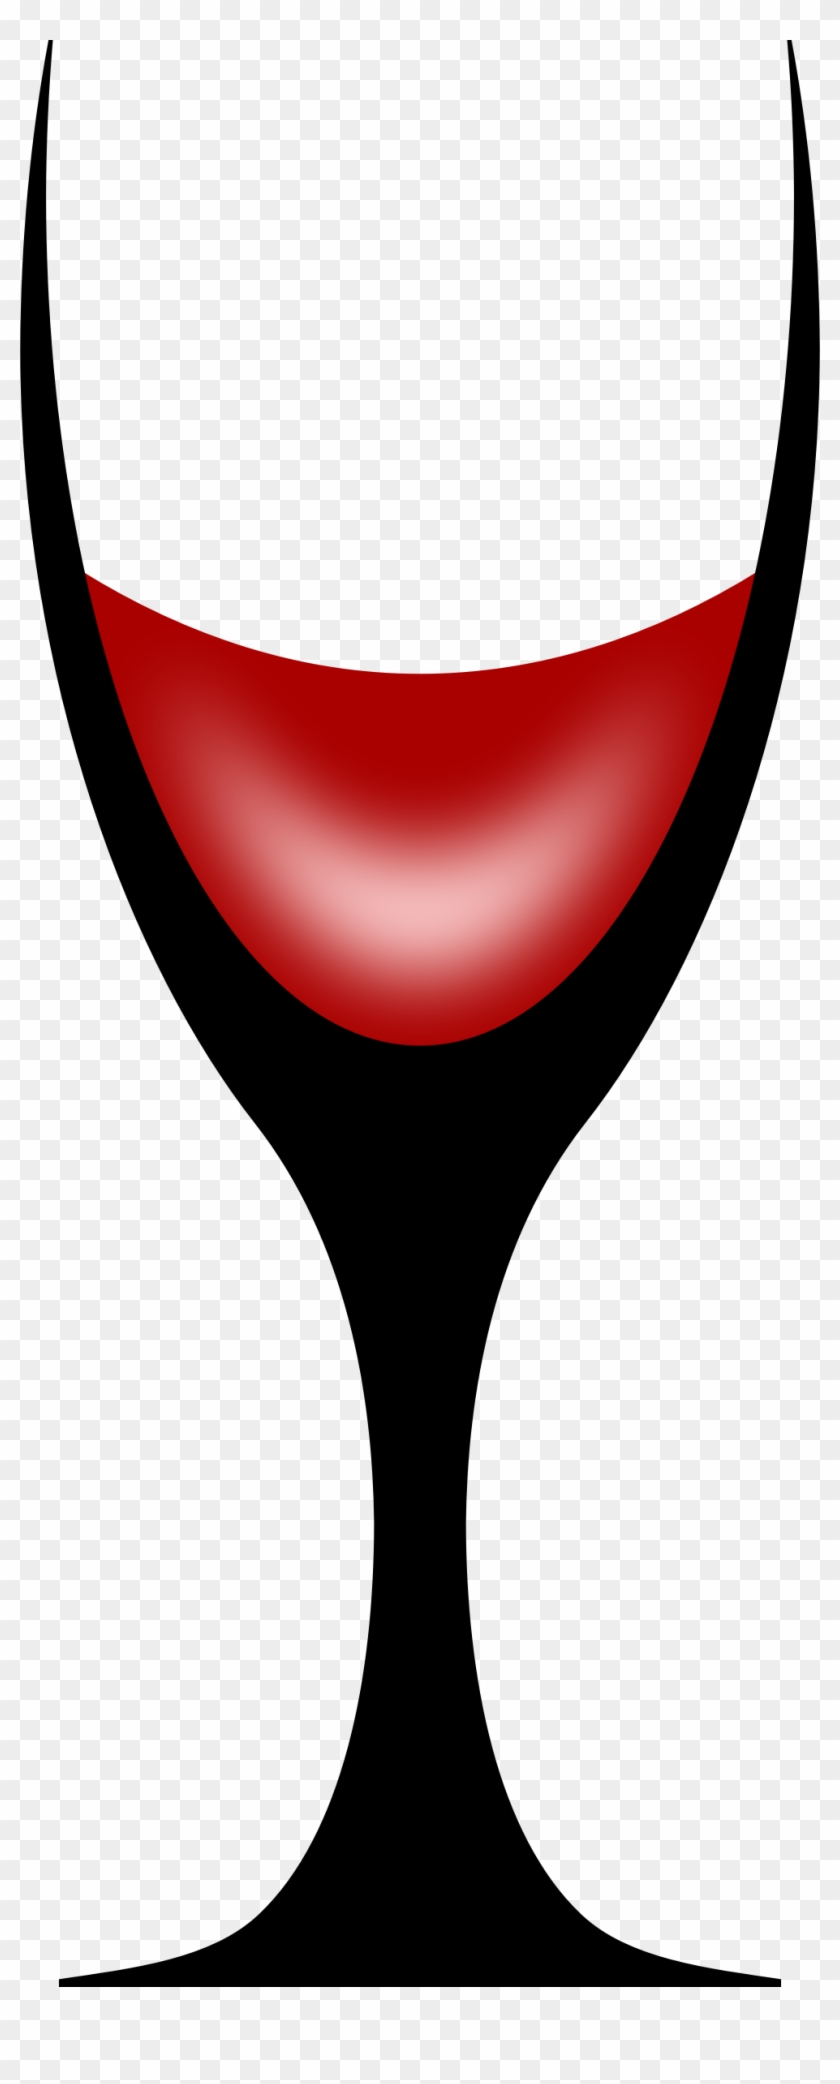 Big Image - Wine Glass #582737